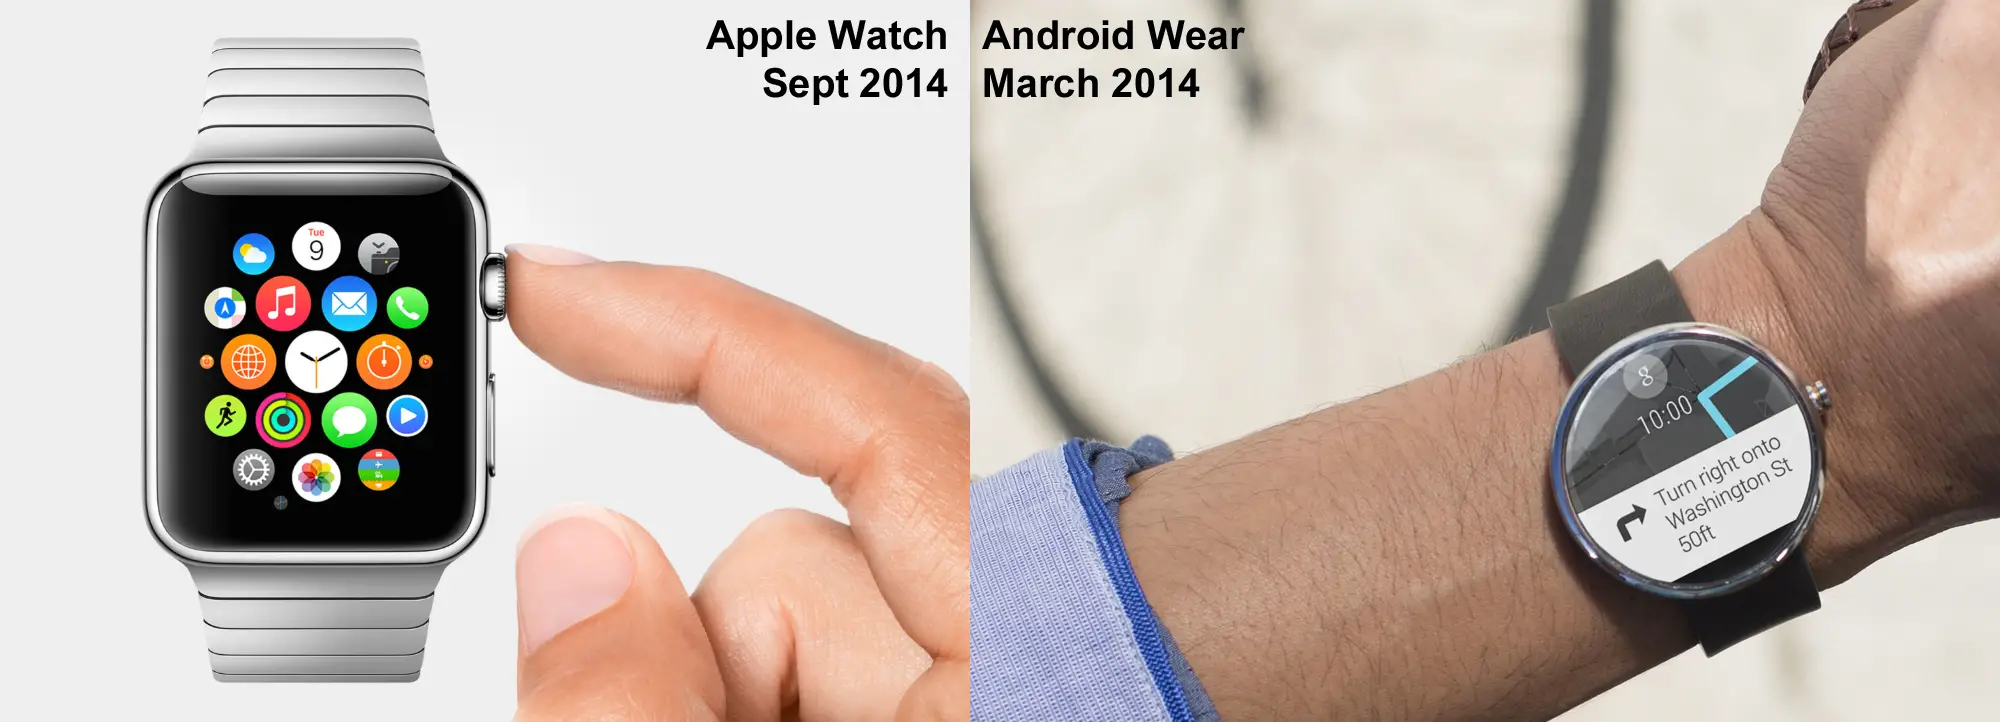 Watch подключить к андроид можно. Часы Эппл вотч круглые. Эппл вотч на андроид. Эпл вотч на андроид подключается. Часы Apple watch круглые.